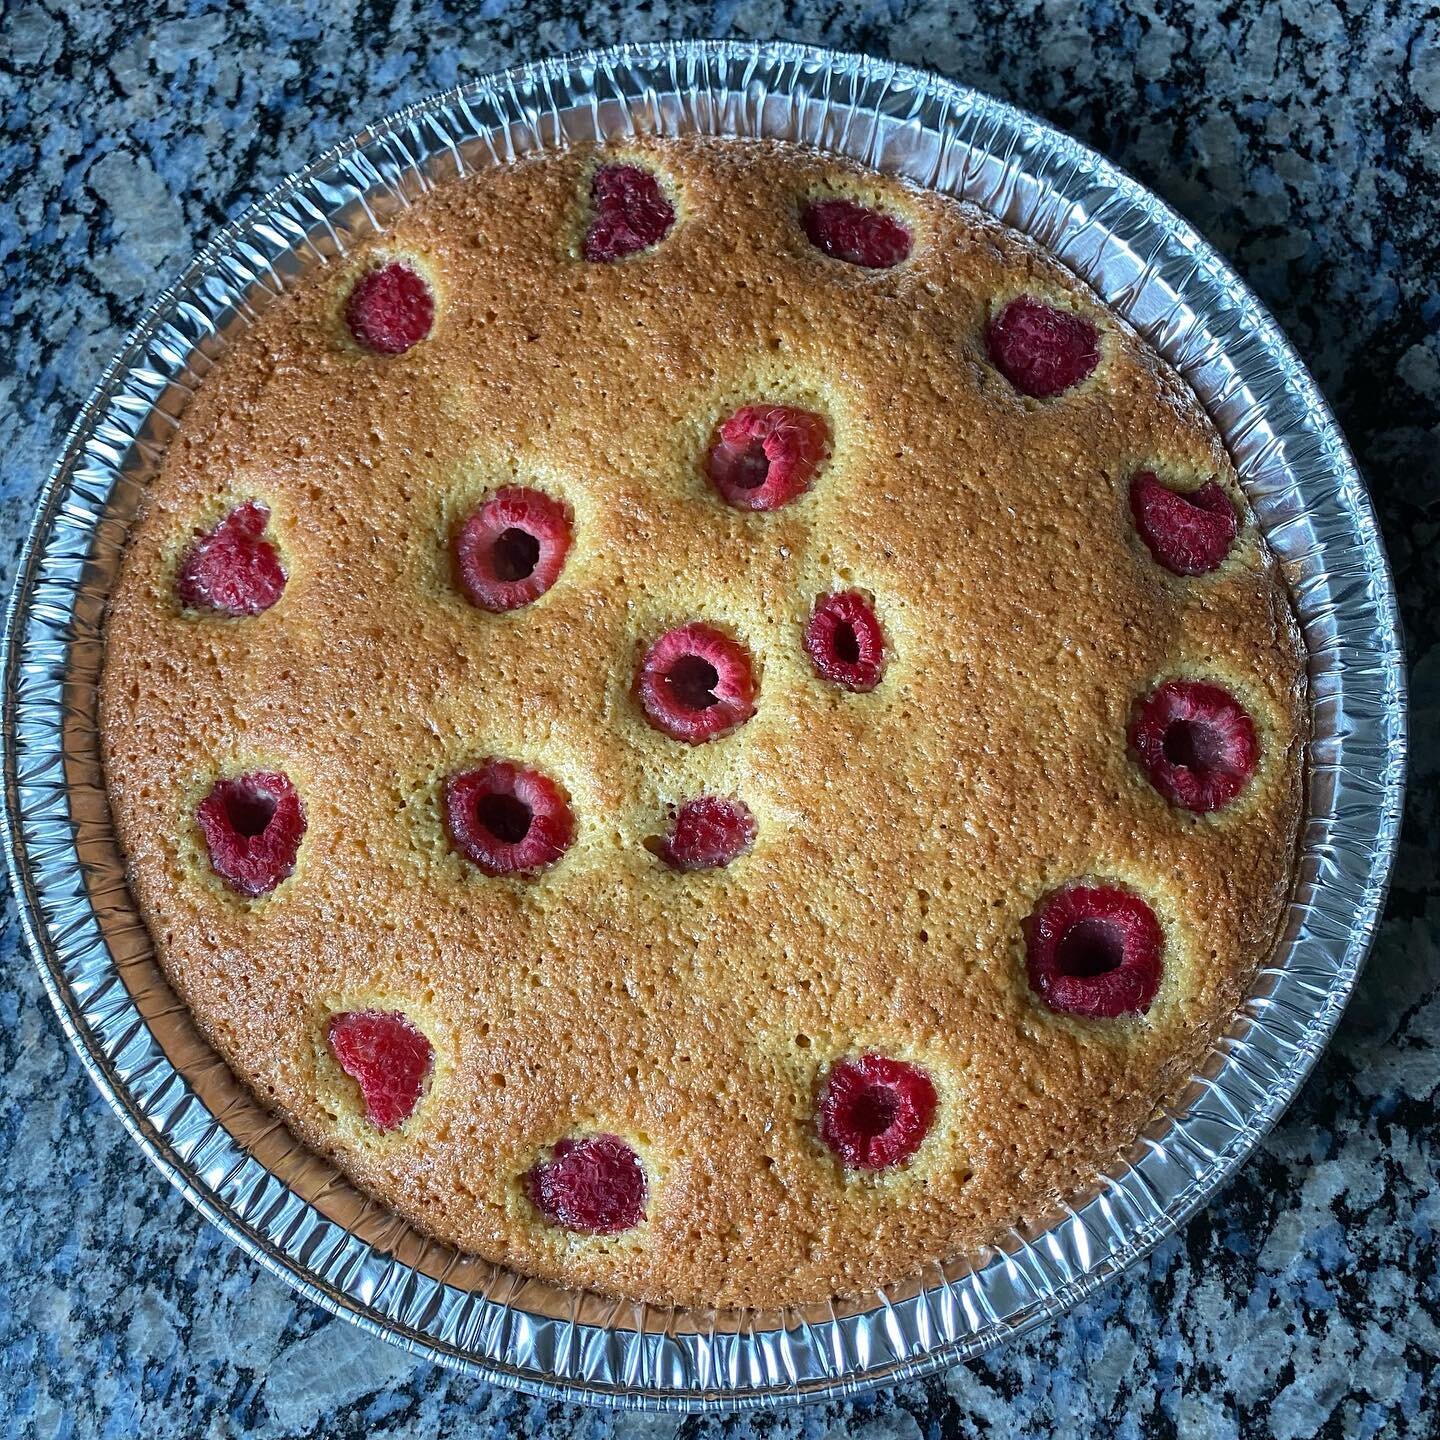 Almond flour raspberry cake on a rainy spring day